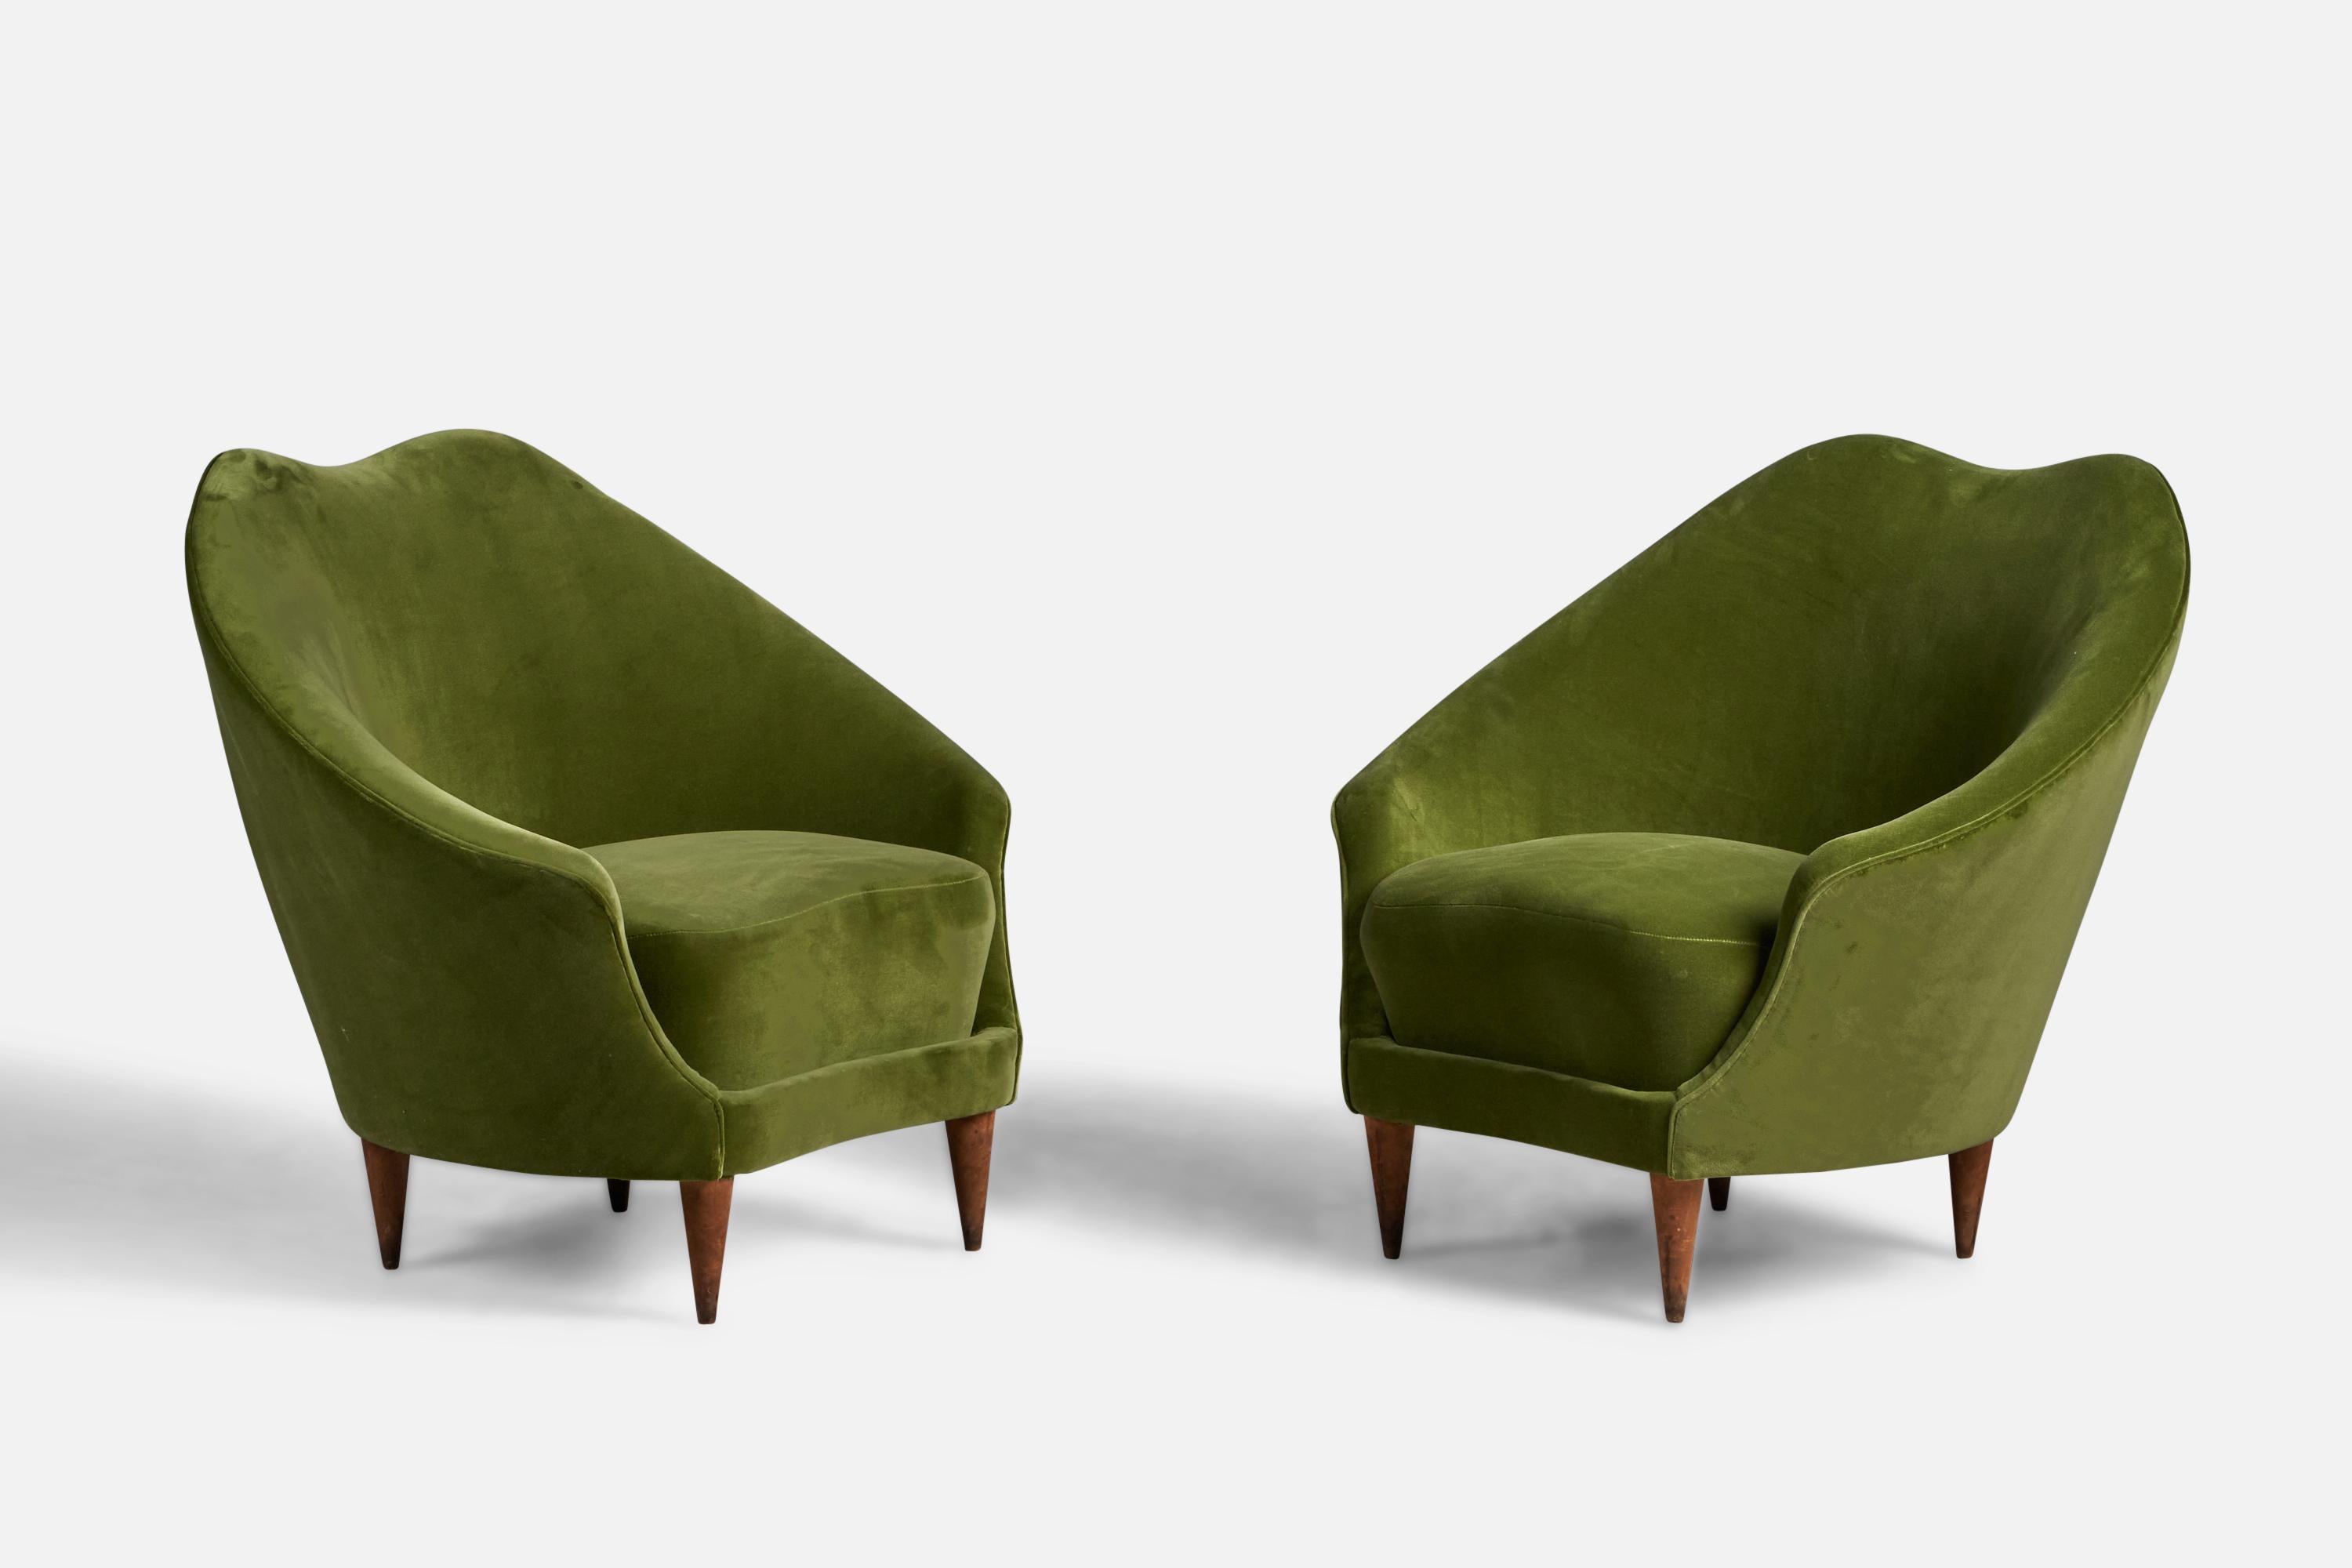 Ein Paar Sessel aus Nussbaum und grünem Samt, entworfen von Federico Munari und hergestellt von ISA Bergamo, Italien, 1950er Jahre.

16